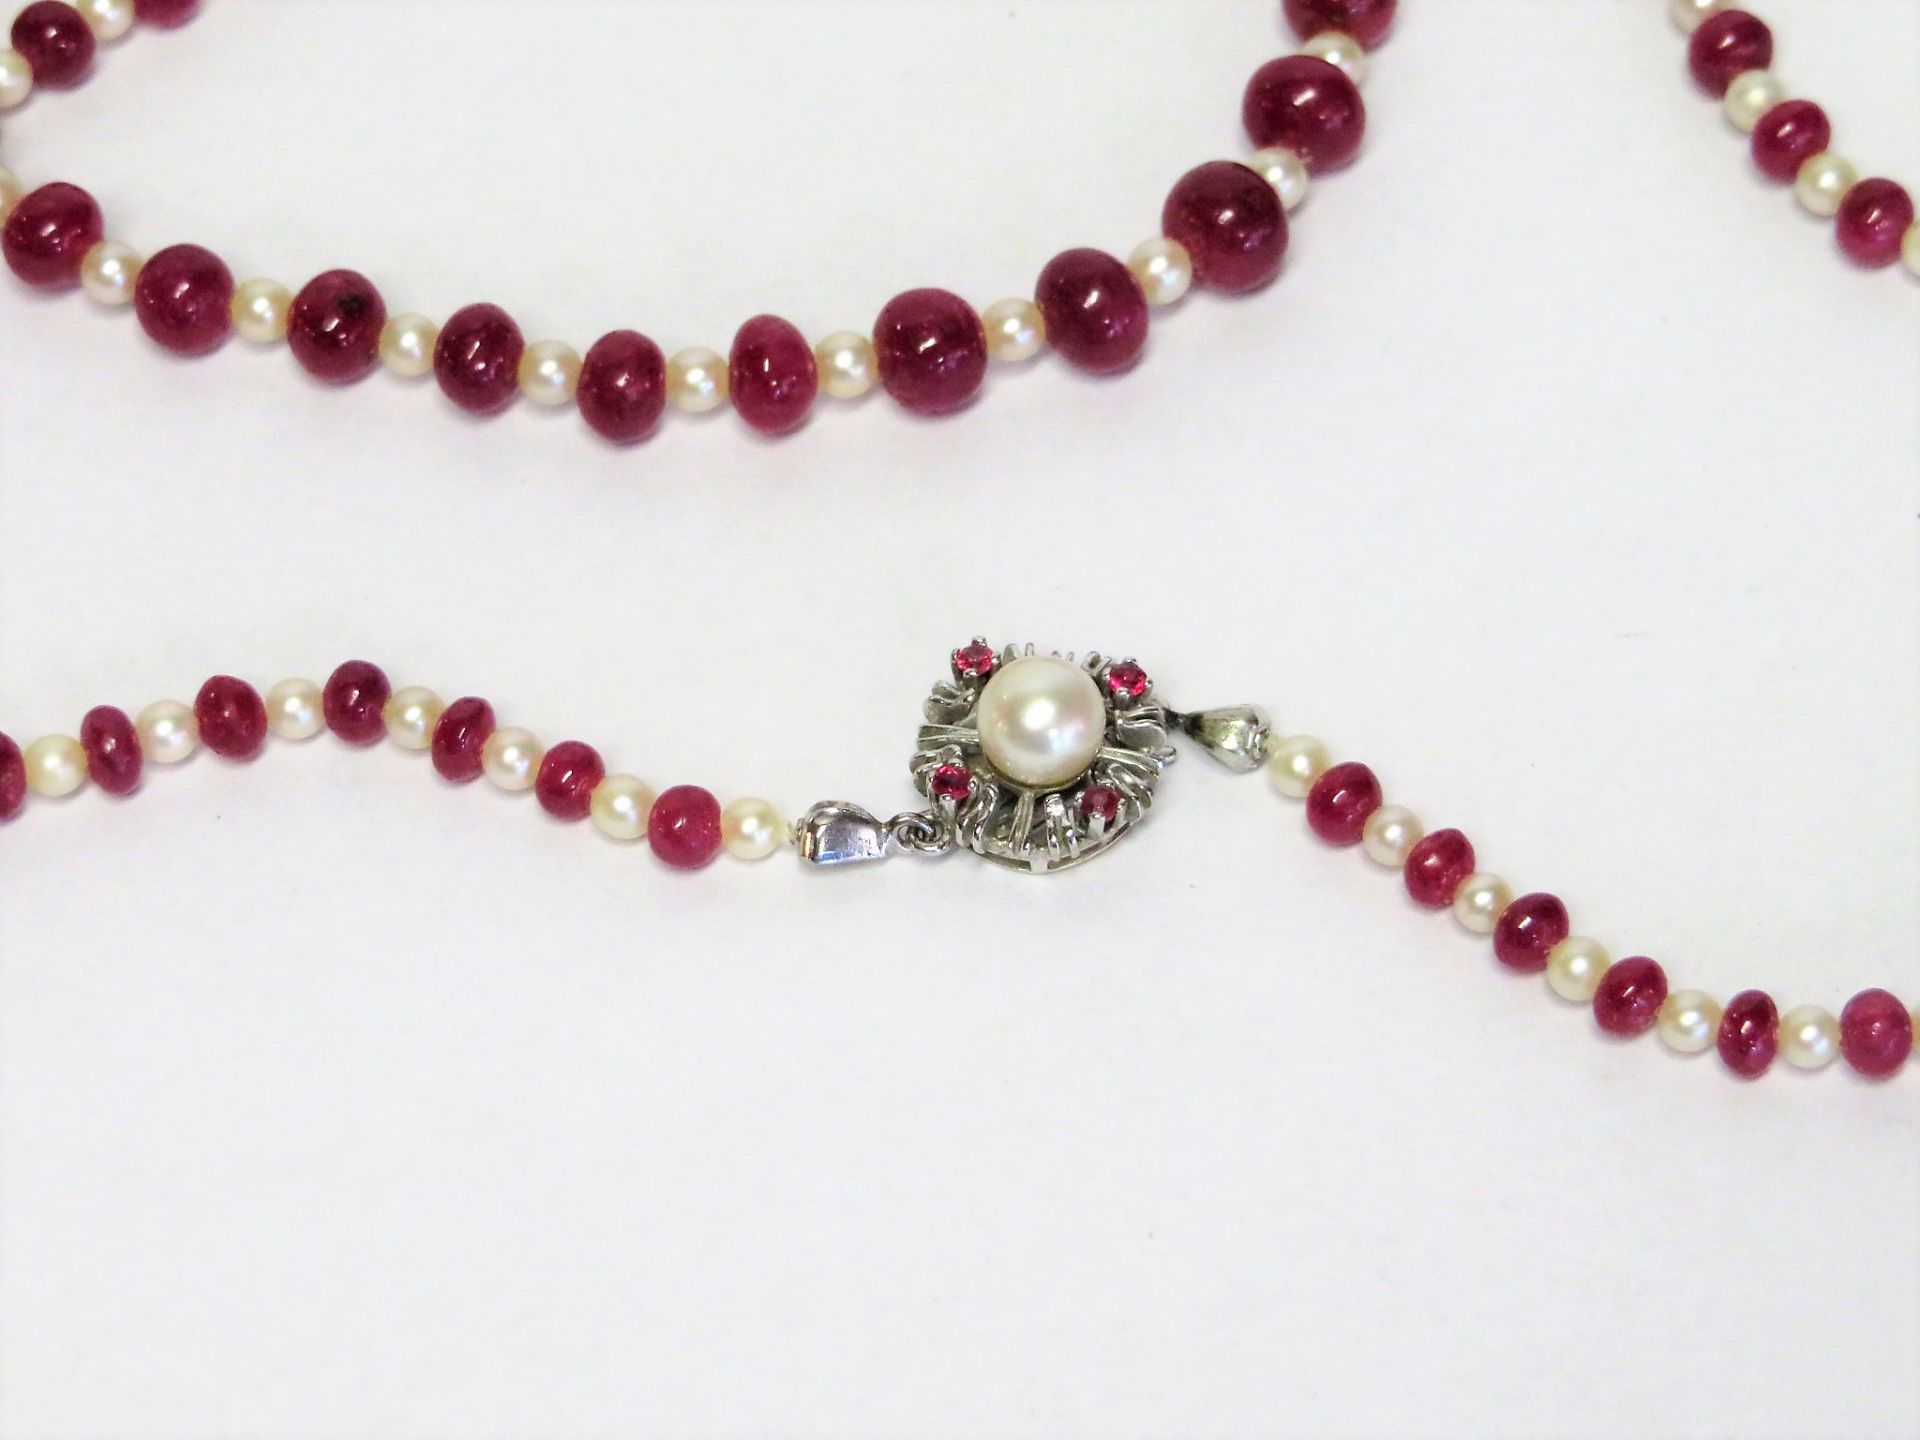 Kette mit 87 Rubinkugeln und Perlenzwischenstücken, Schließe besetzt mit Perle - Image 2 of 2